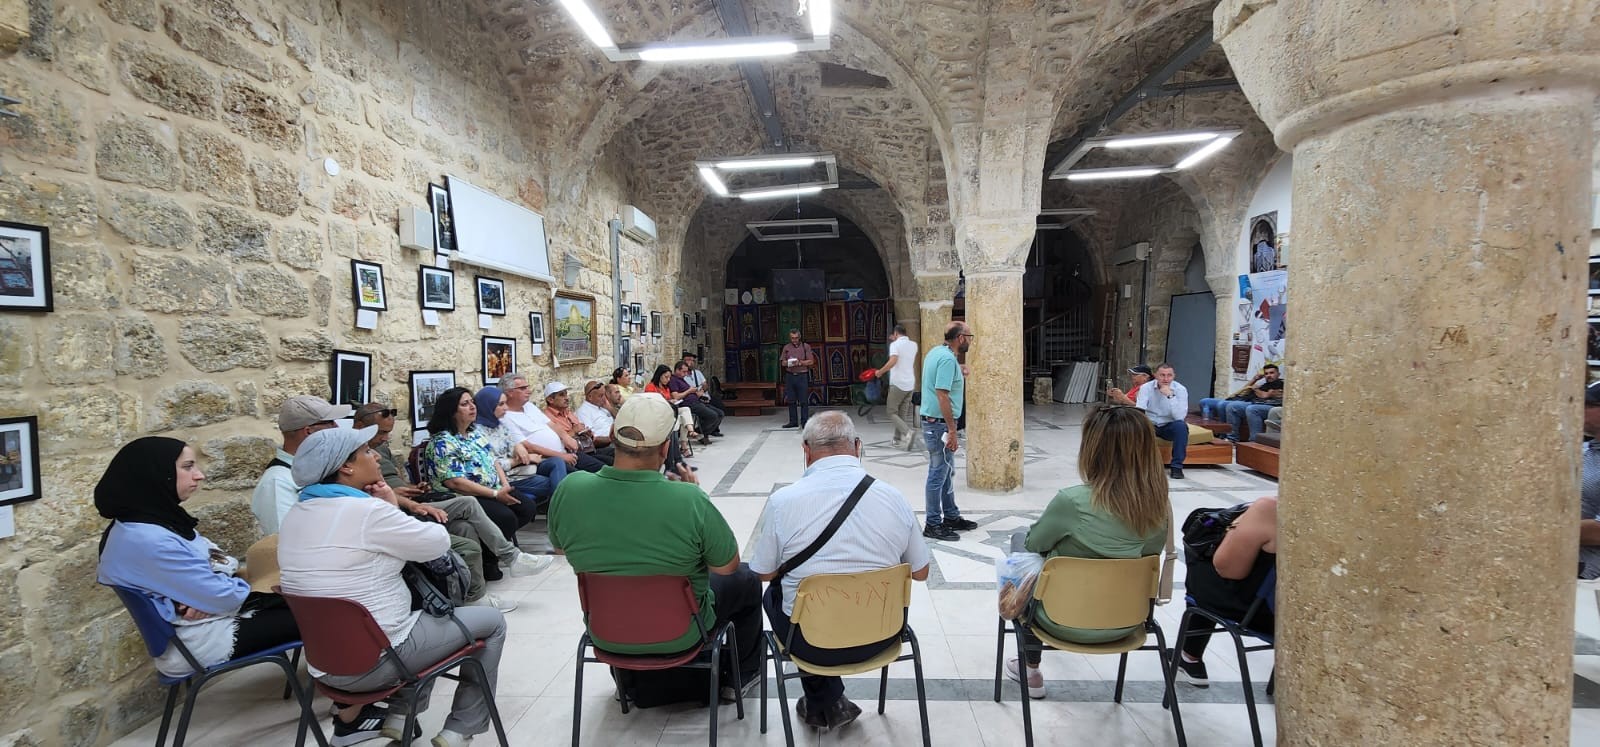 جولة ميدانية لأدلاء سياحيين فلسطينين في البلدة القديمة  5.jpeg